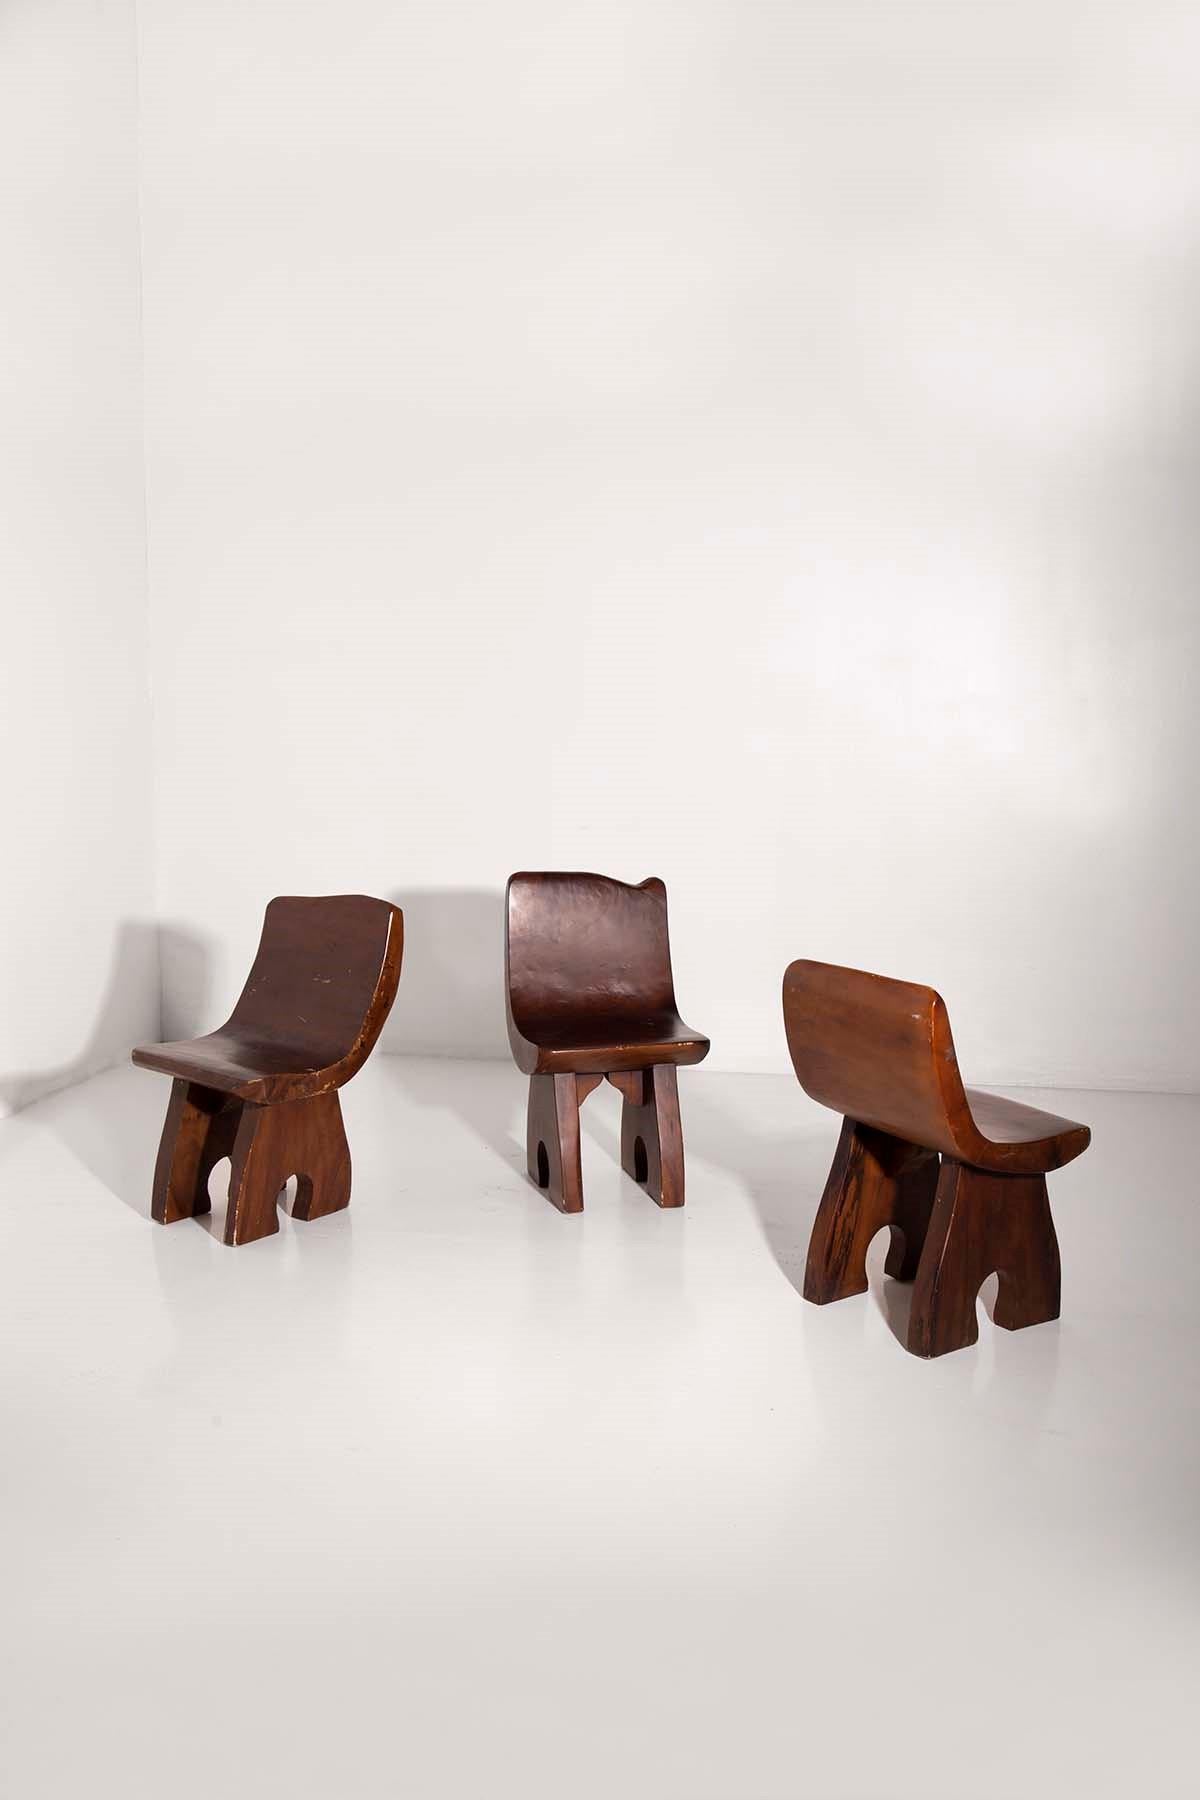 Trois chaises brésiliennes en bois attribuées à José Zanine Caldas. 1950s